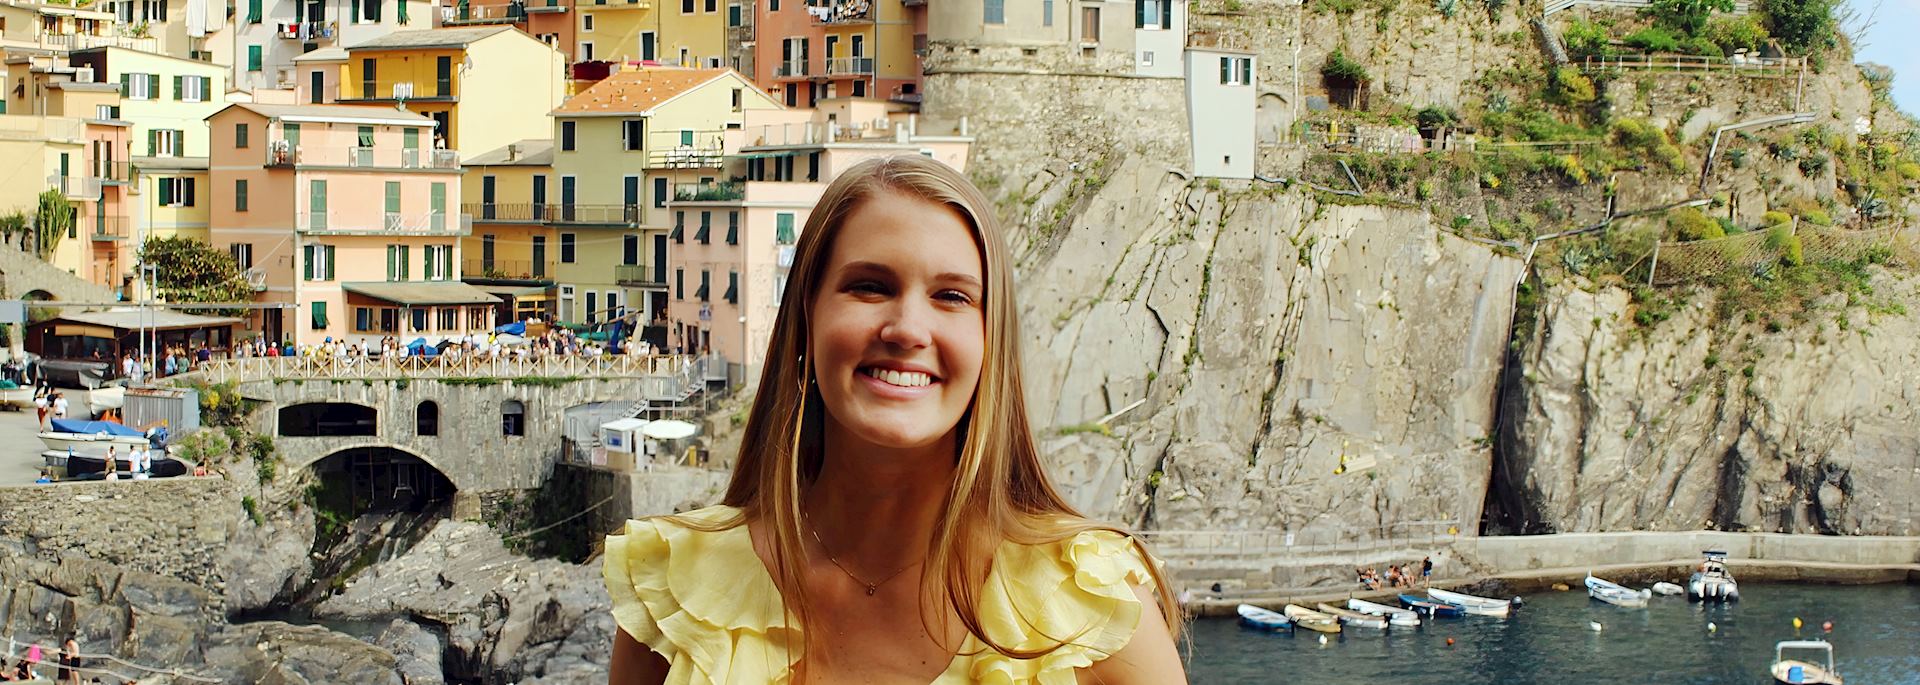 Kelly in Cinque Terre, Italy